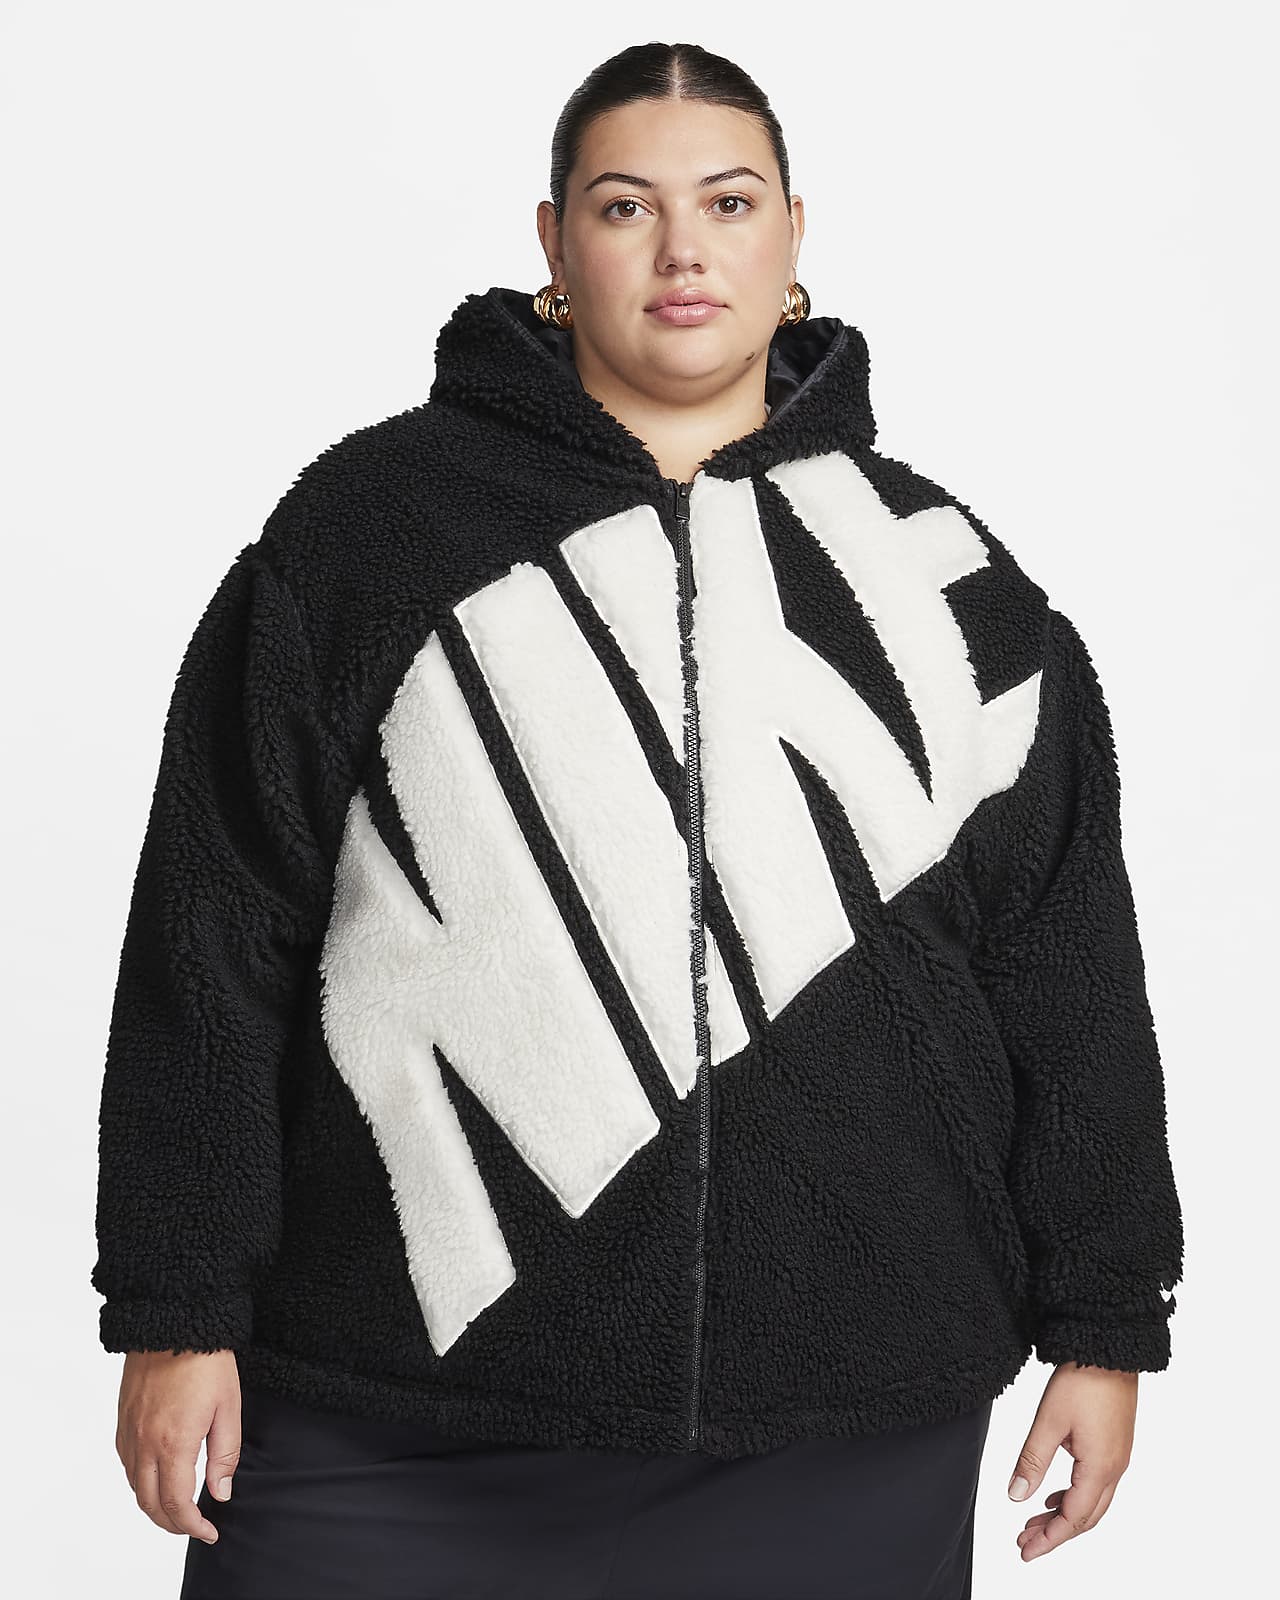 Γυναικείο τζάκετ από χοντρό φλις με λογότυπο Nike Sportswear (μεγάλα μεγέθη)